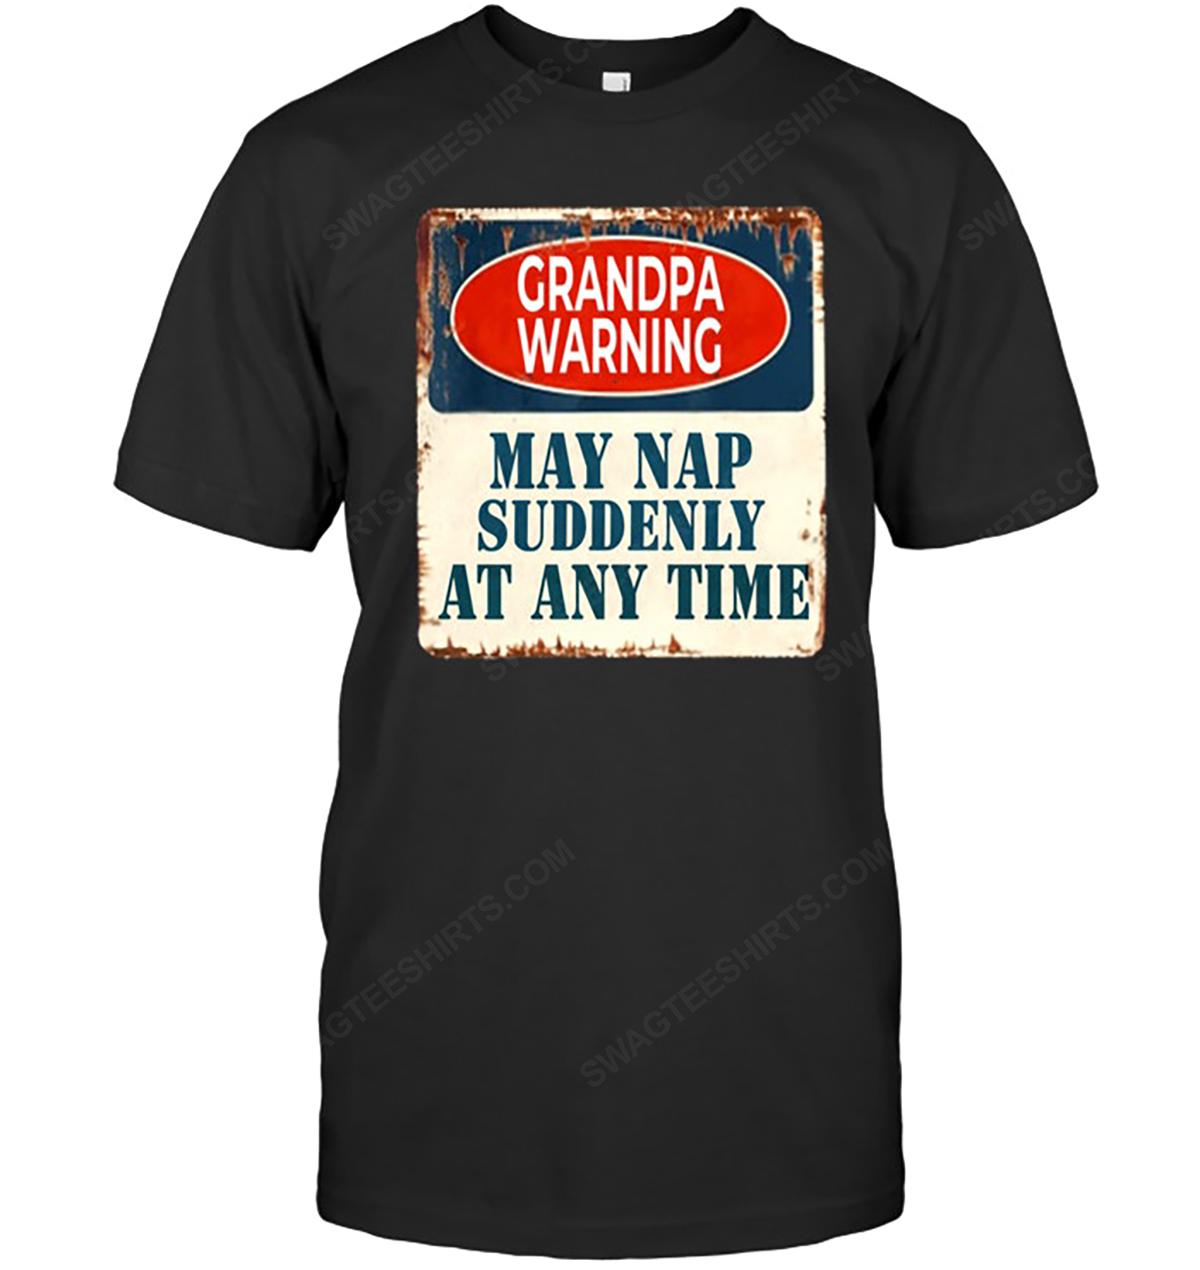 Grandpa warning may nap suddenly at any time tshirt 1